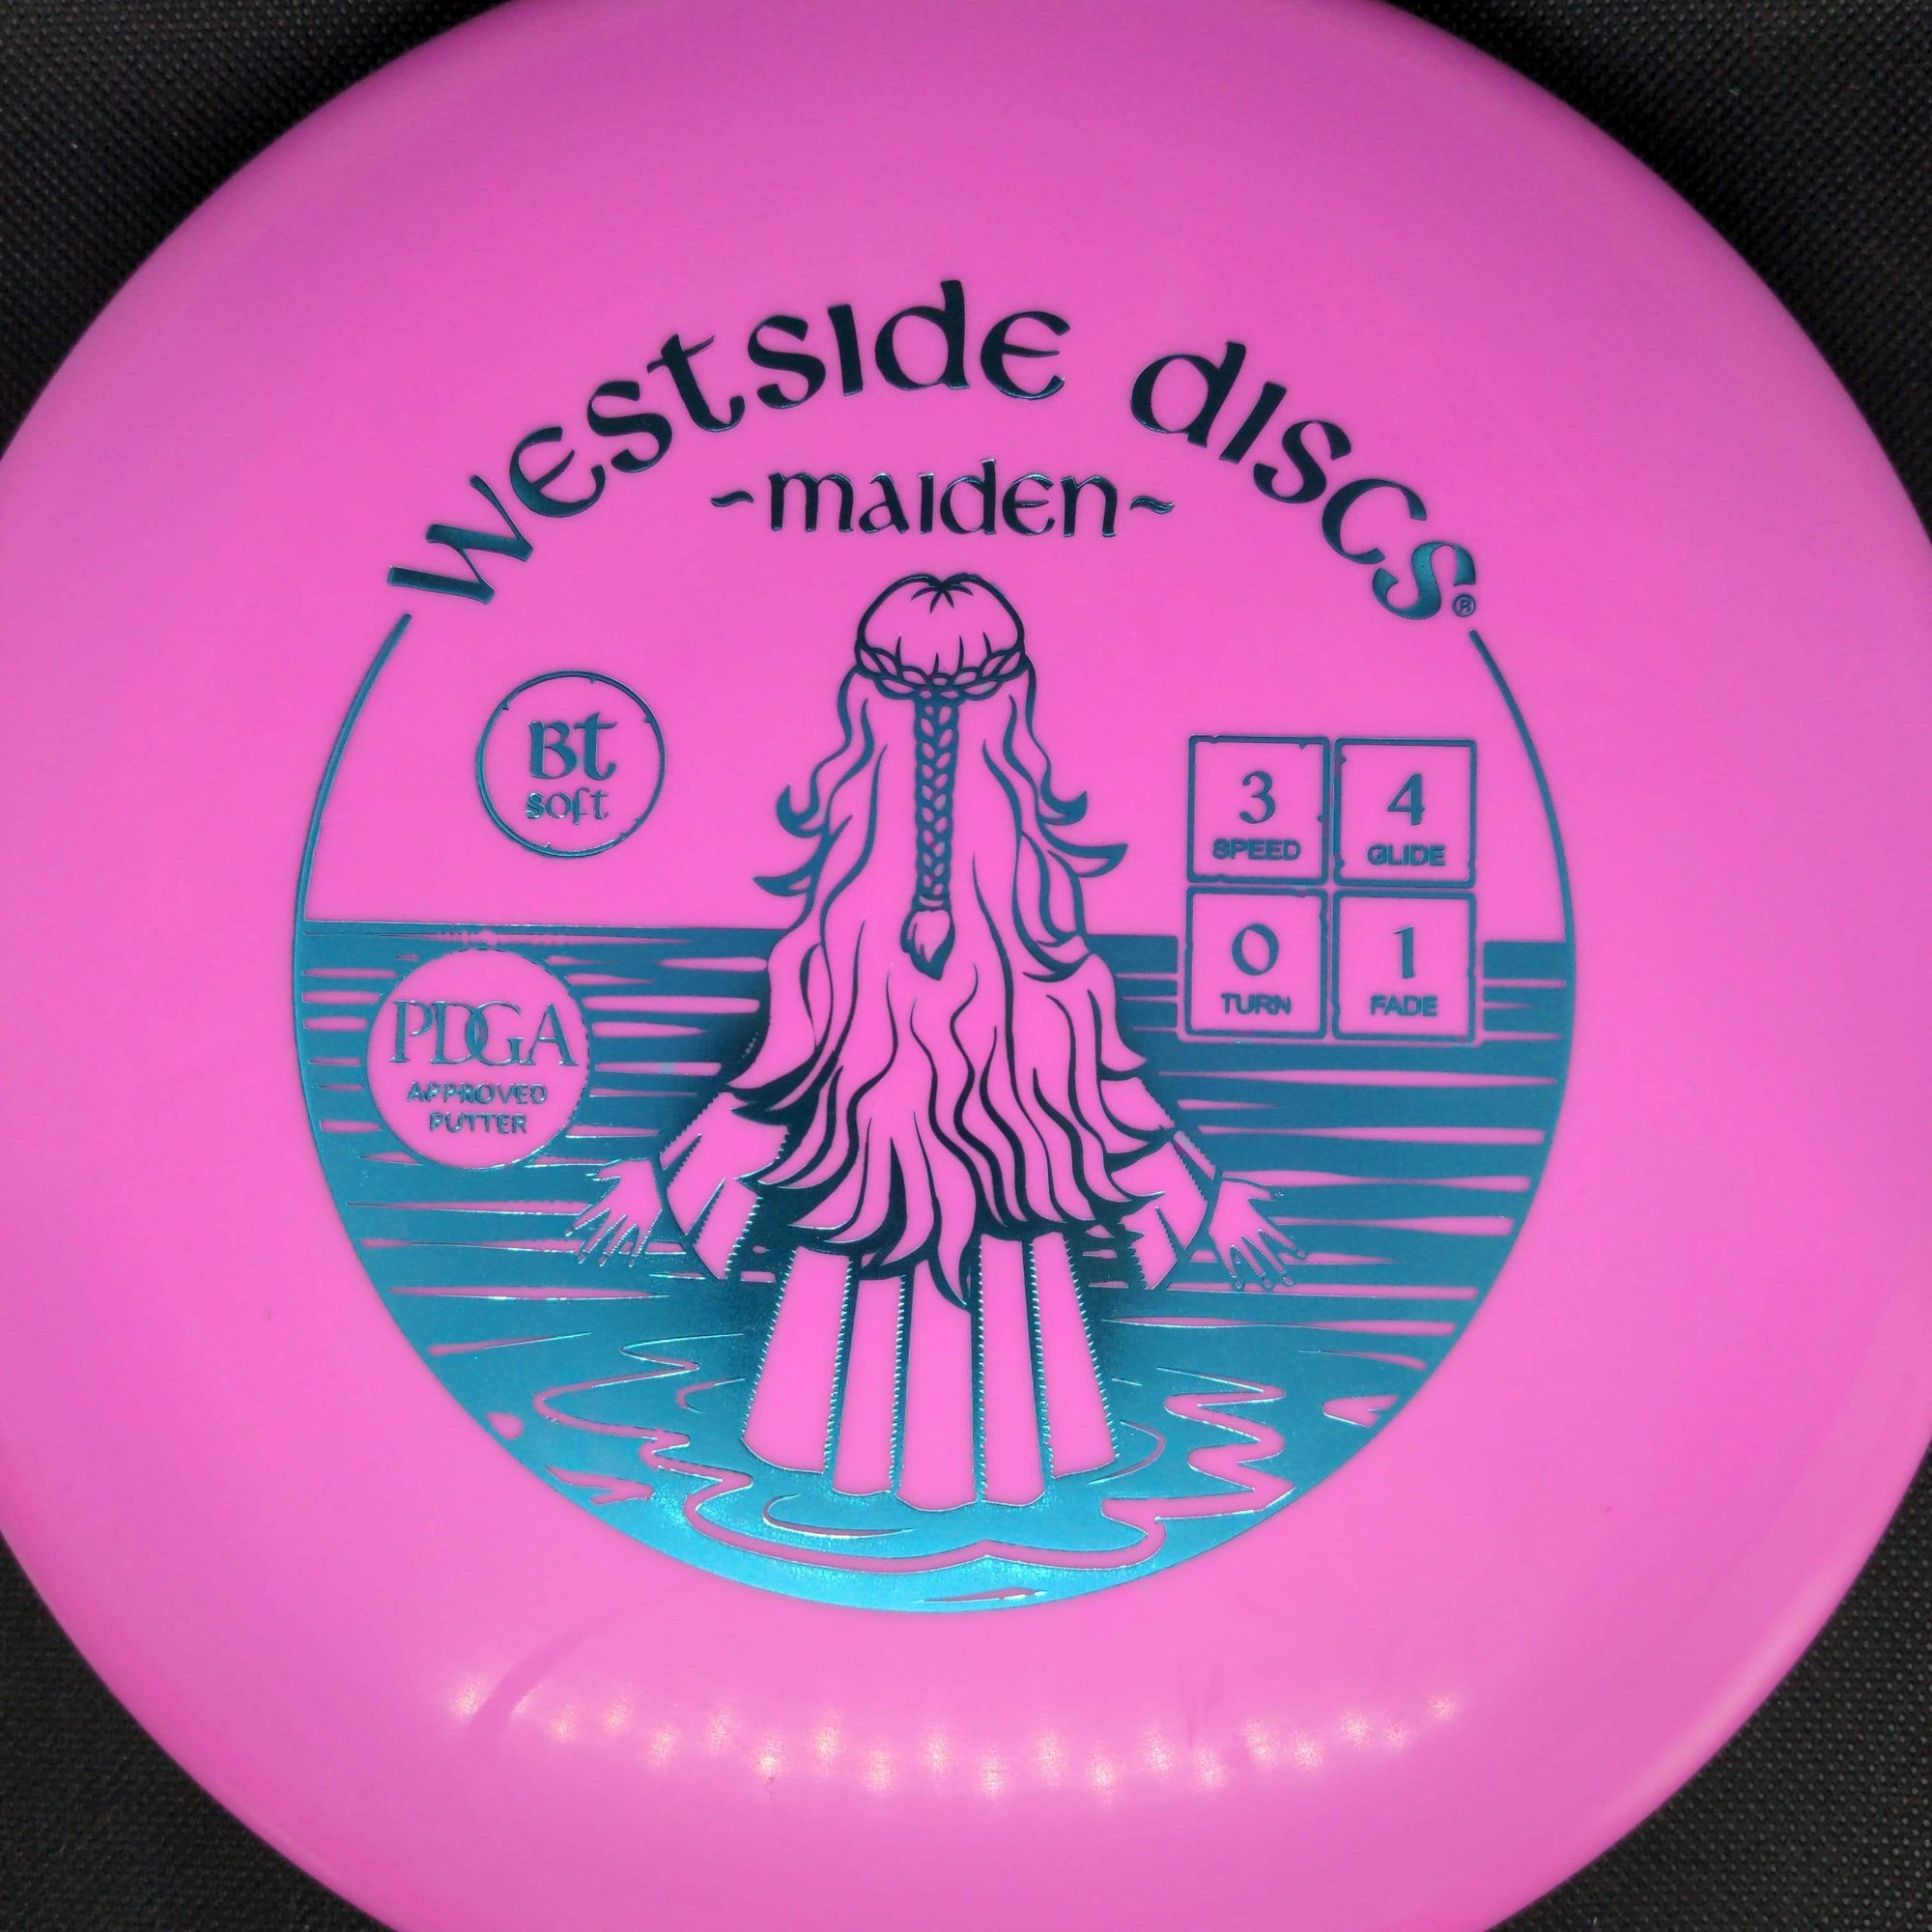 Westside Discs Putter Pink Teal Stamp 176g Maiden BT Soft Plastic